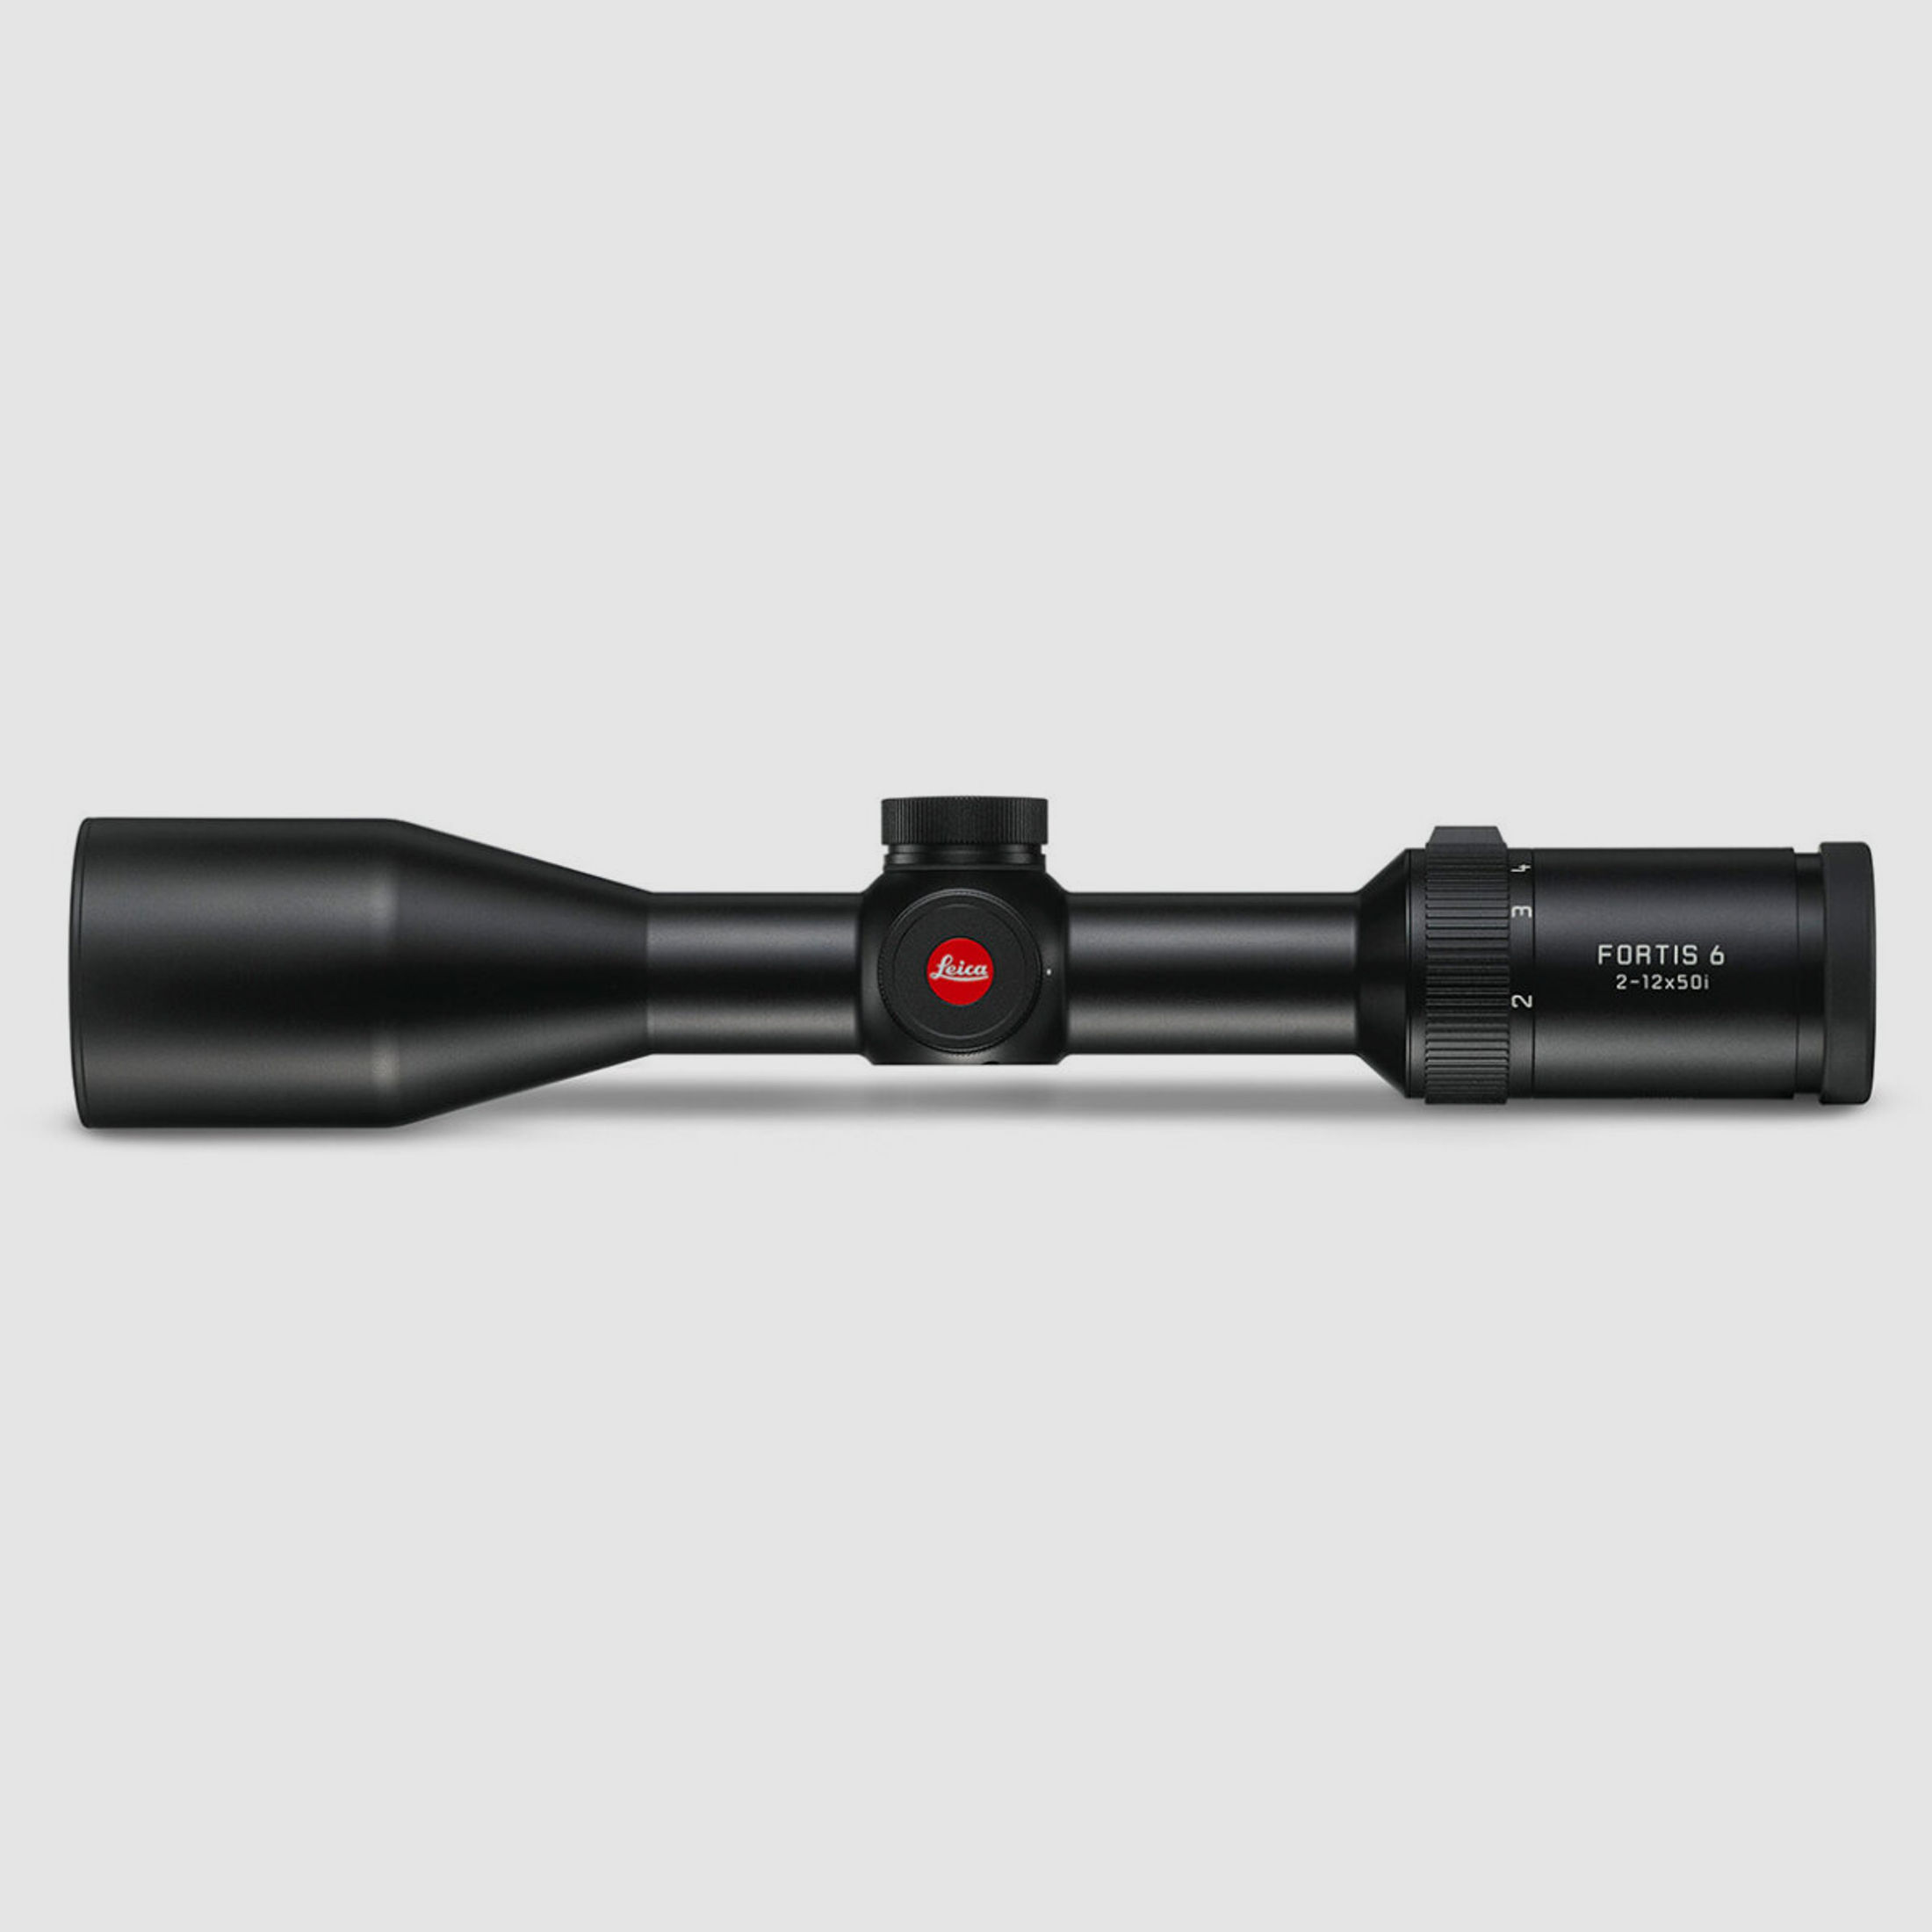 Leica Zielfernrohr Fortis 6 2-12X50i mit Schiene Variante